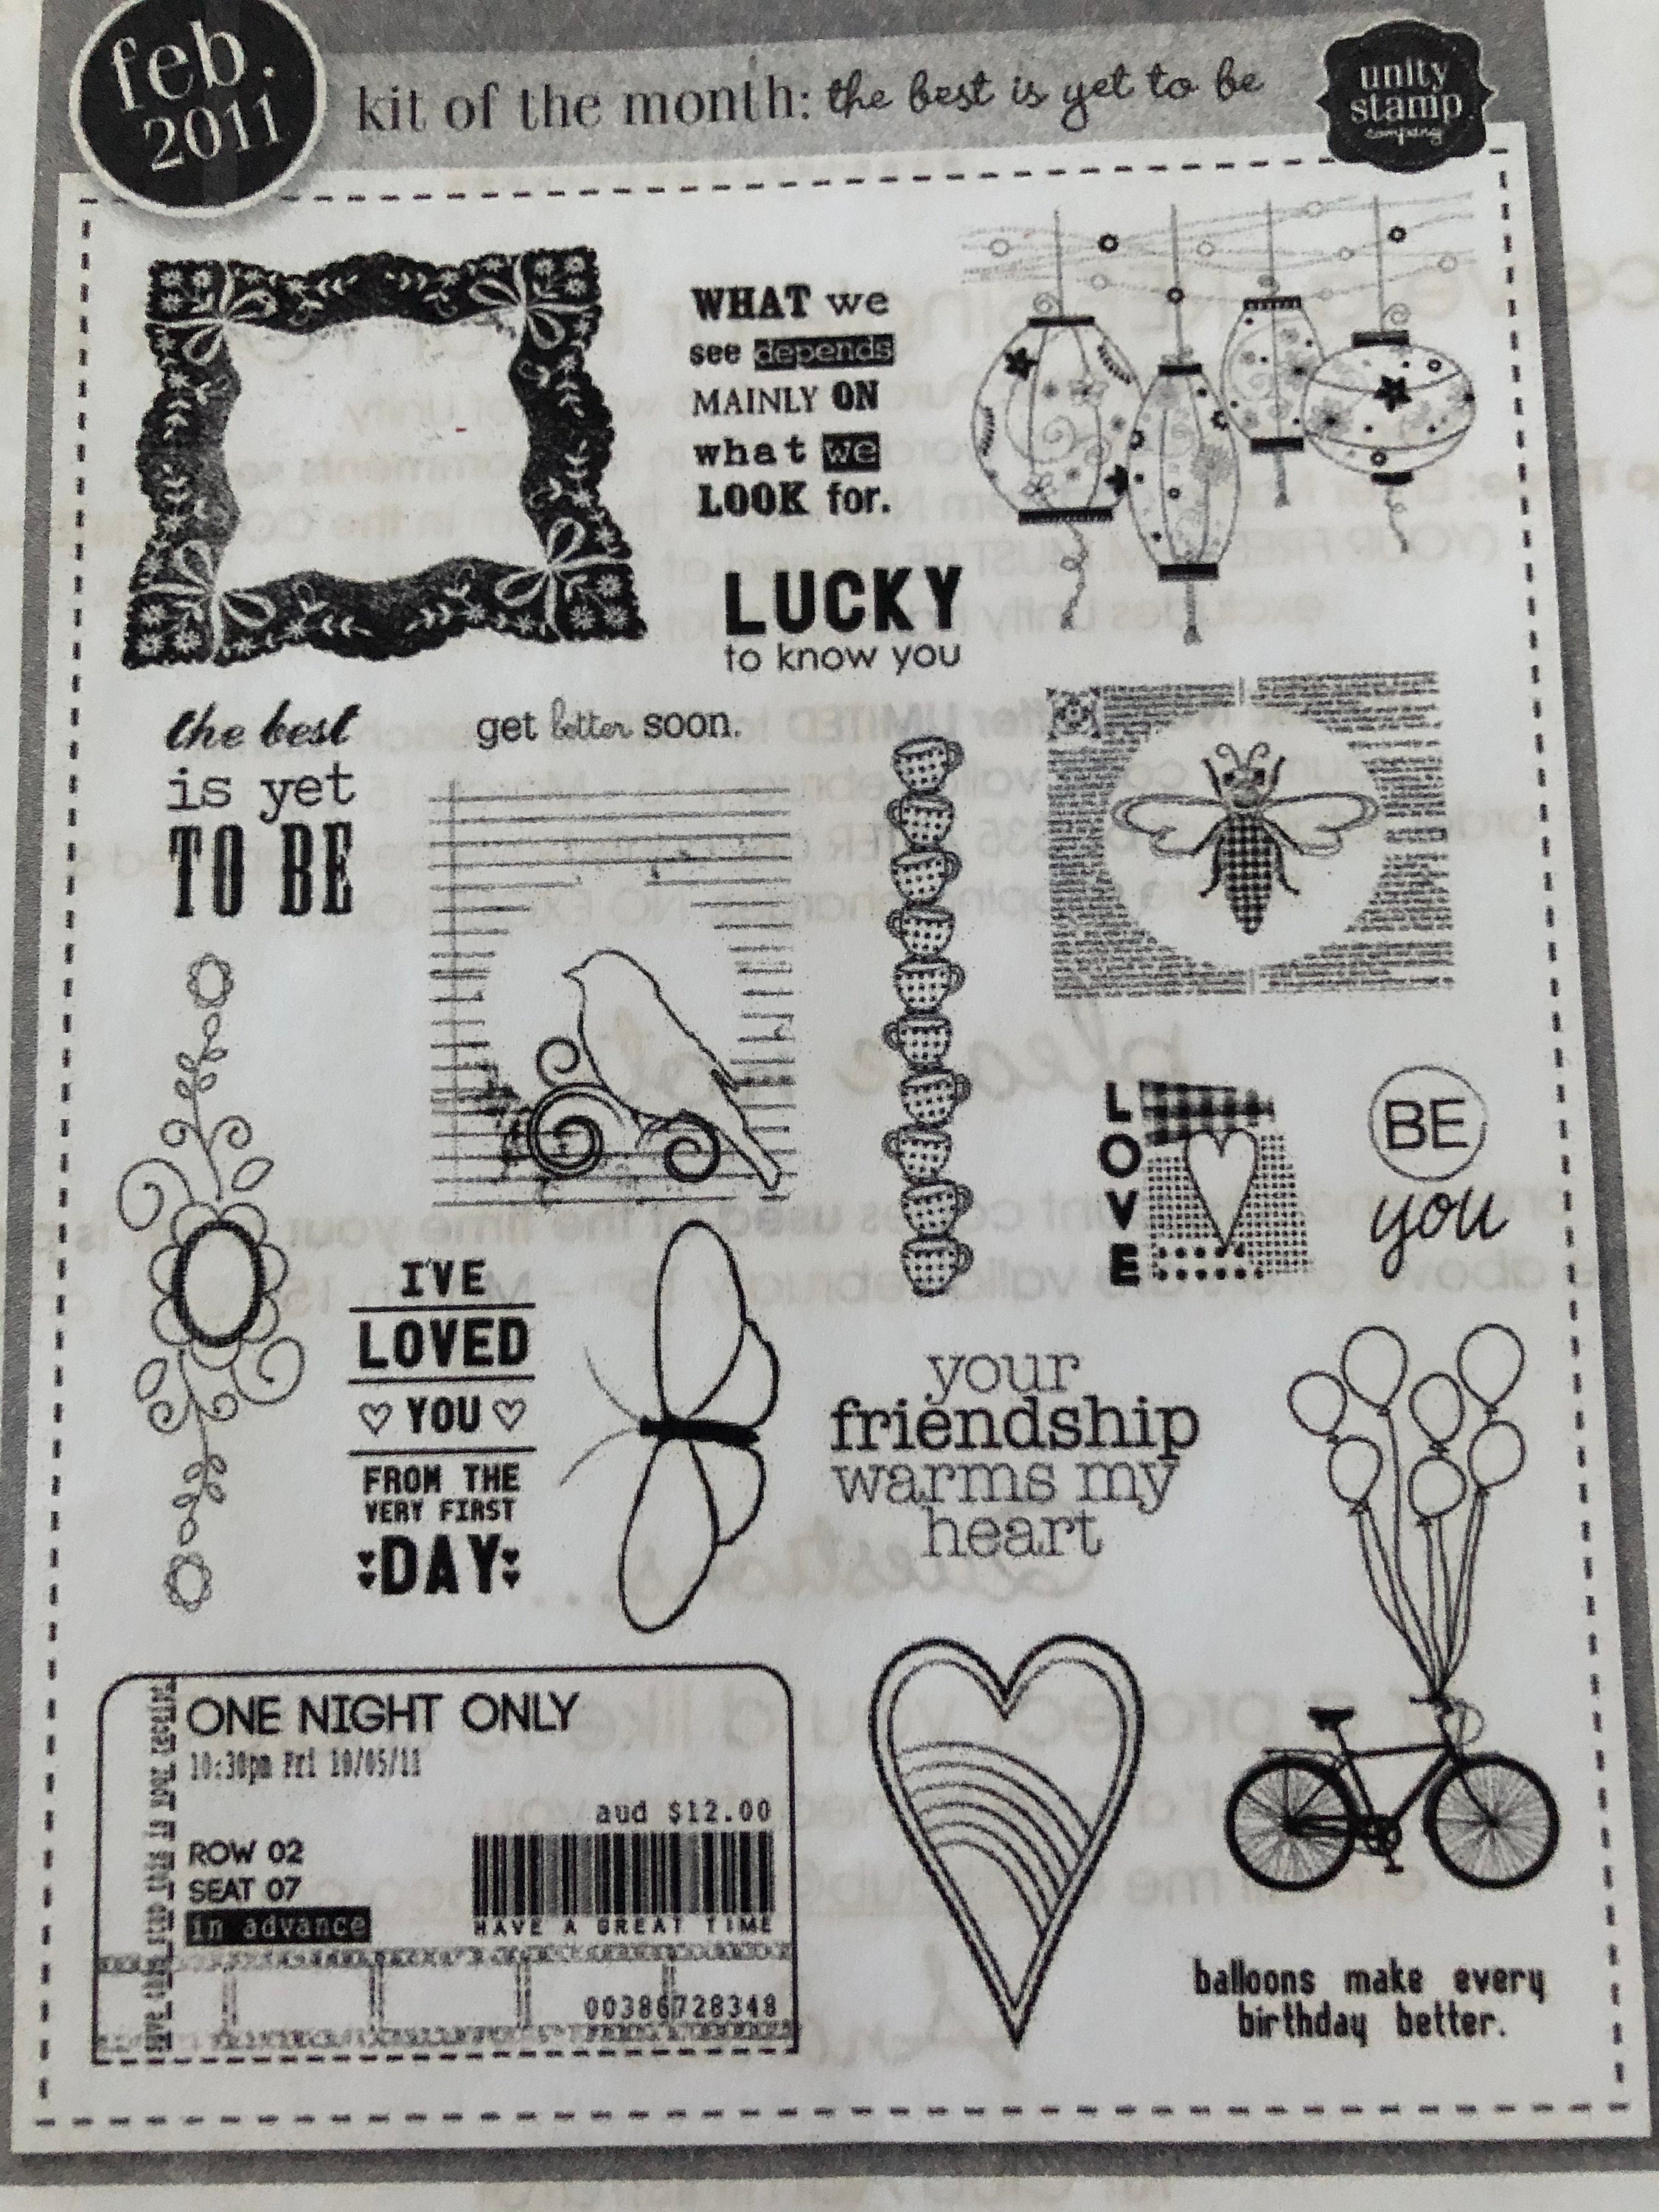 Textile Block Printing Kit, Beginners Stamp DIY Craft Kit 